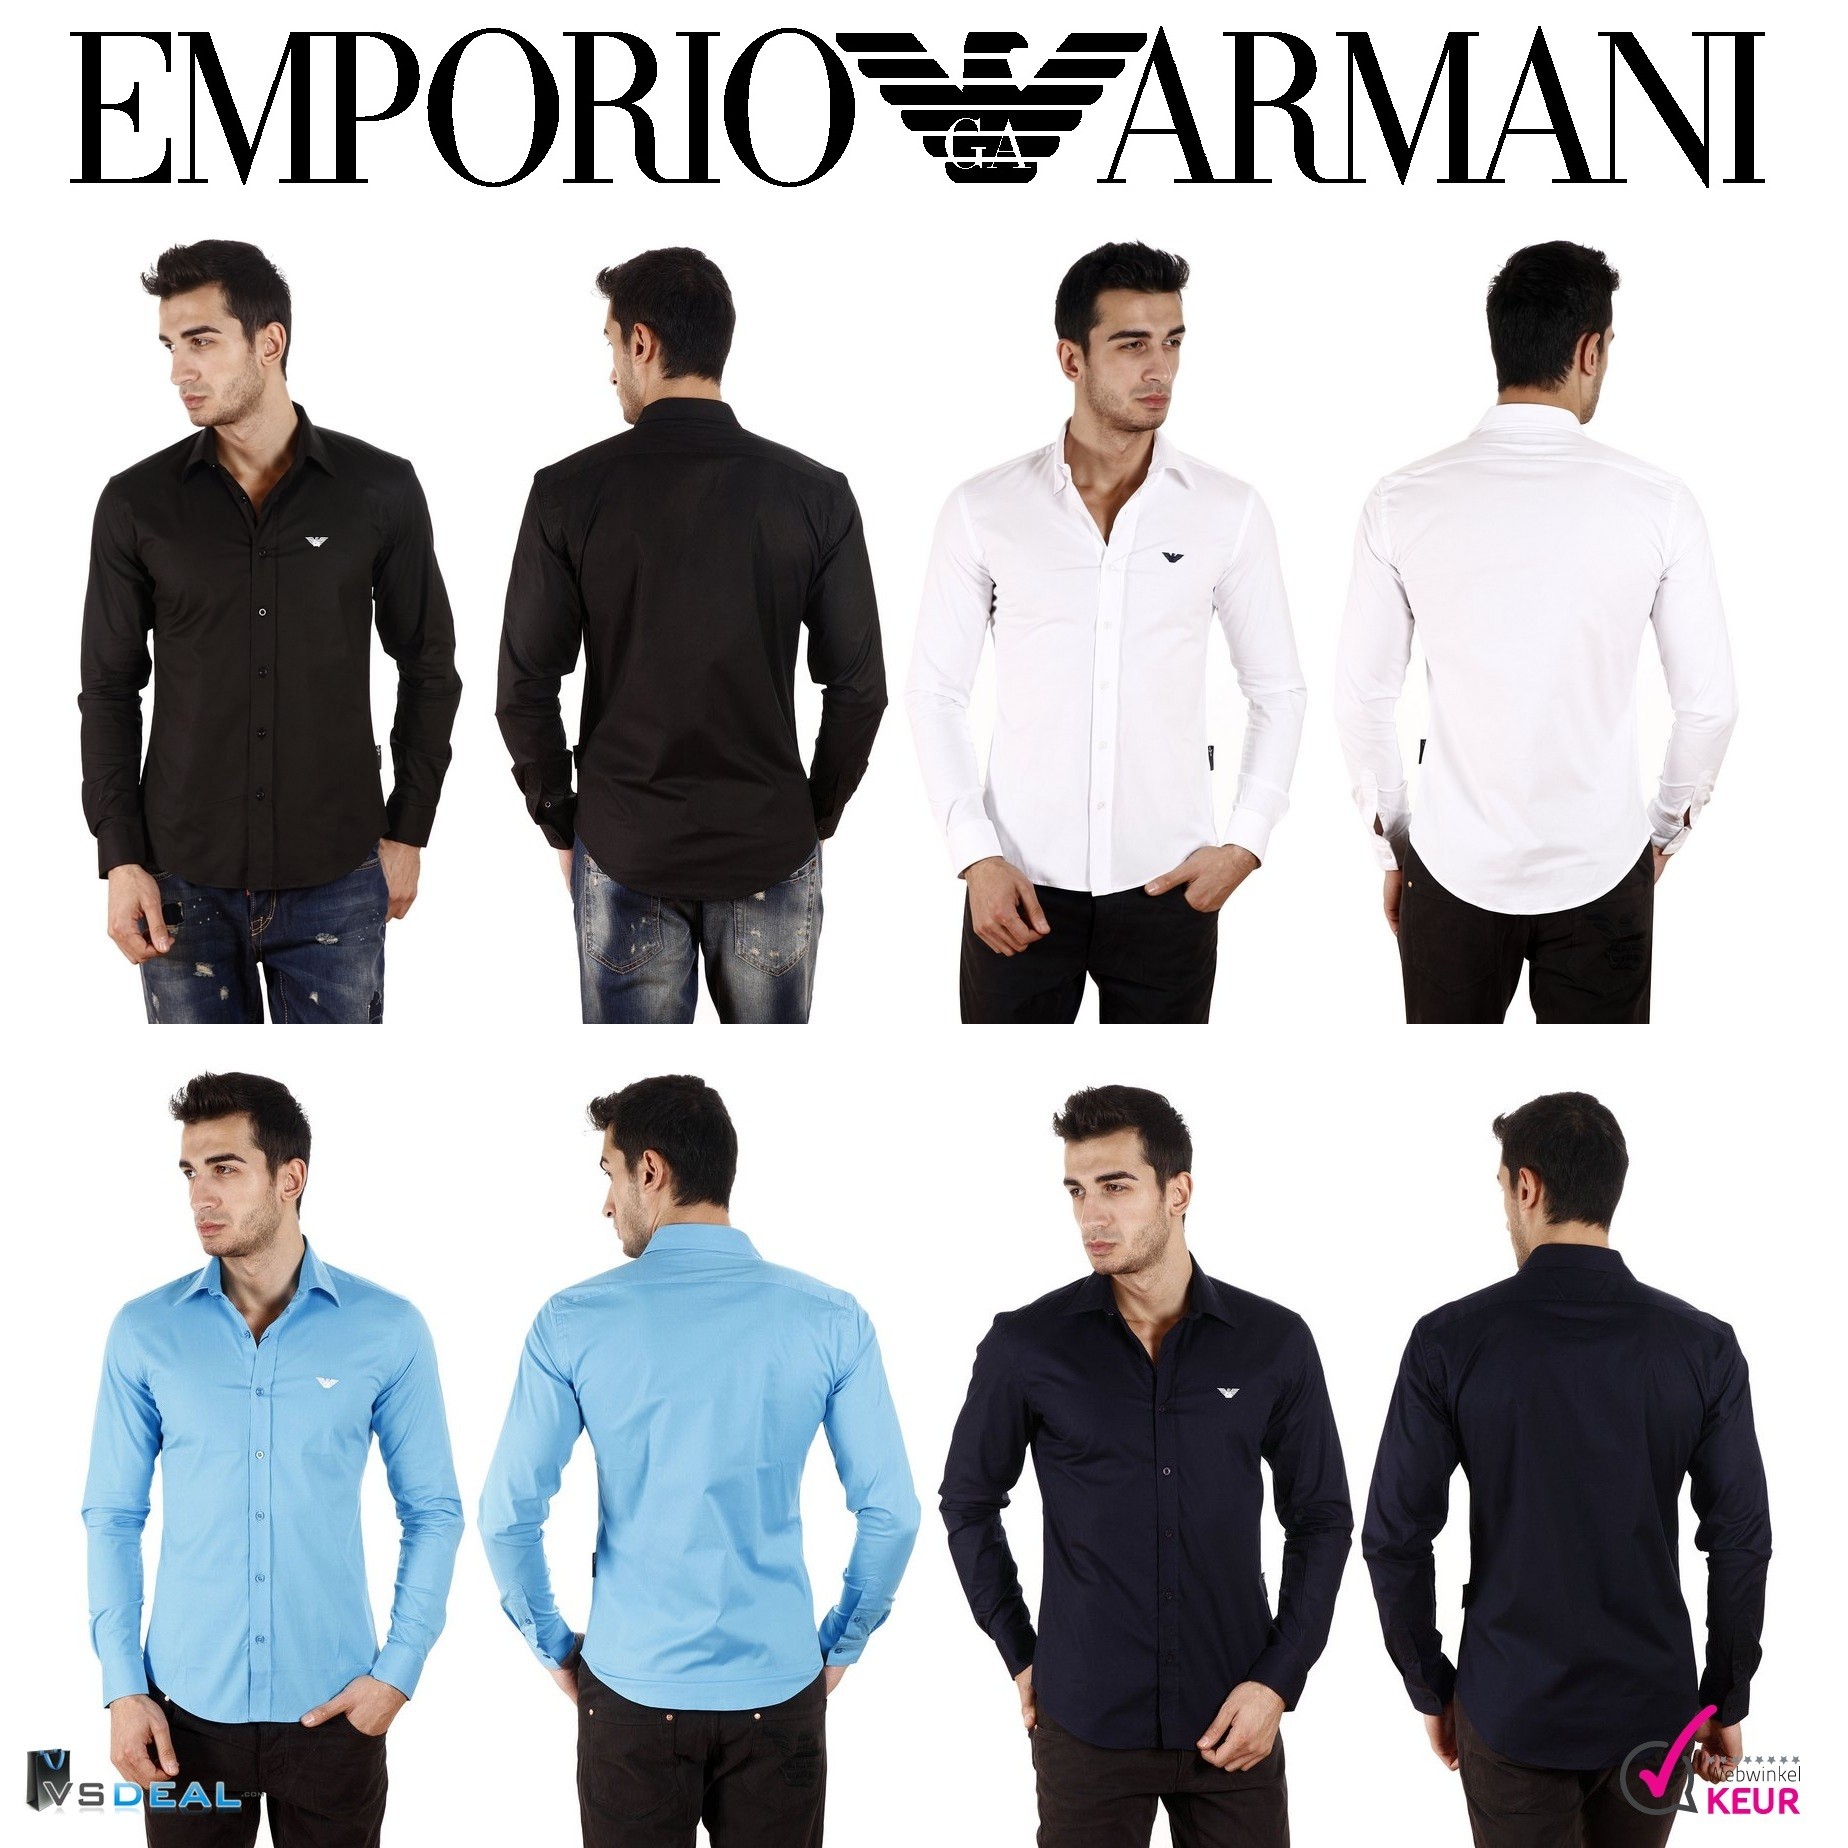 vsdeal.com - Emporio Armani Overhemden in 4 kleuren OP=OP